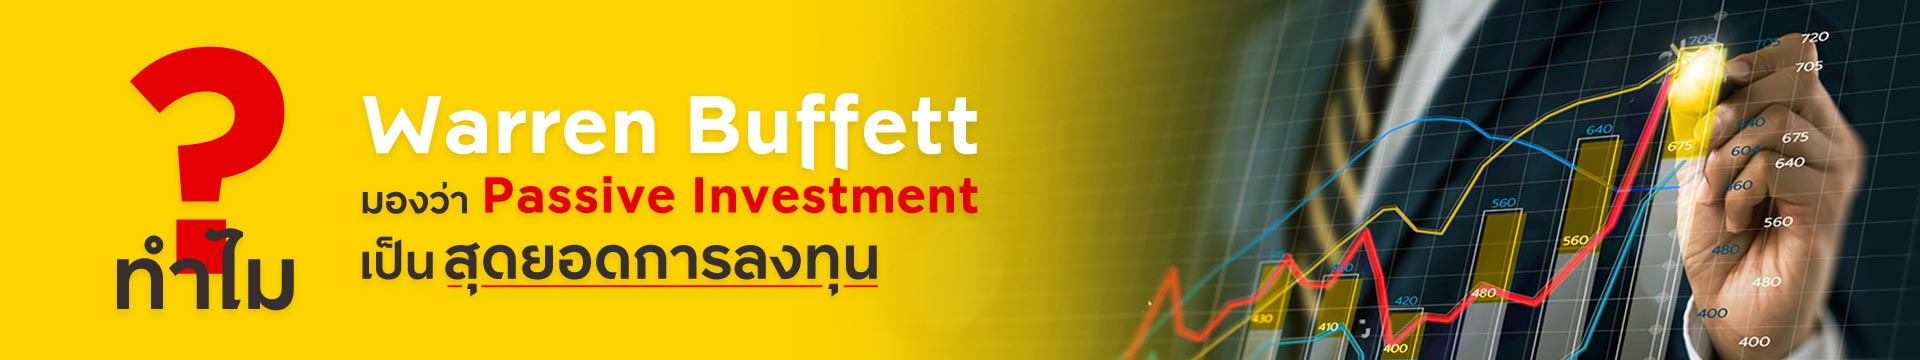 ทำไม “Warren Buffett” มองว่า Passive Investment เป็นสุดยอดการลงทุน